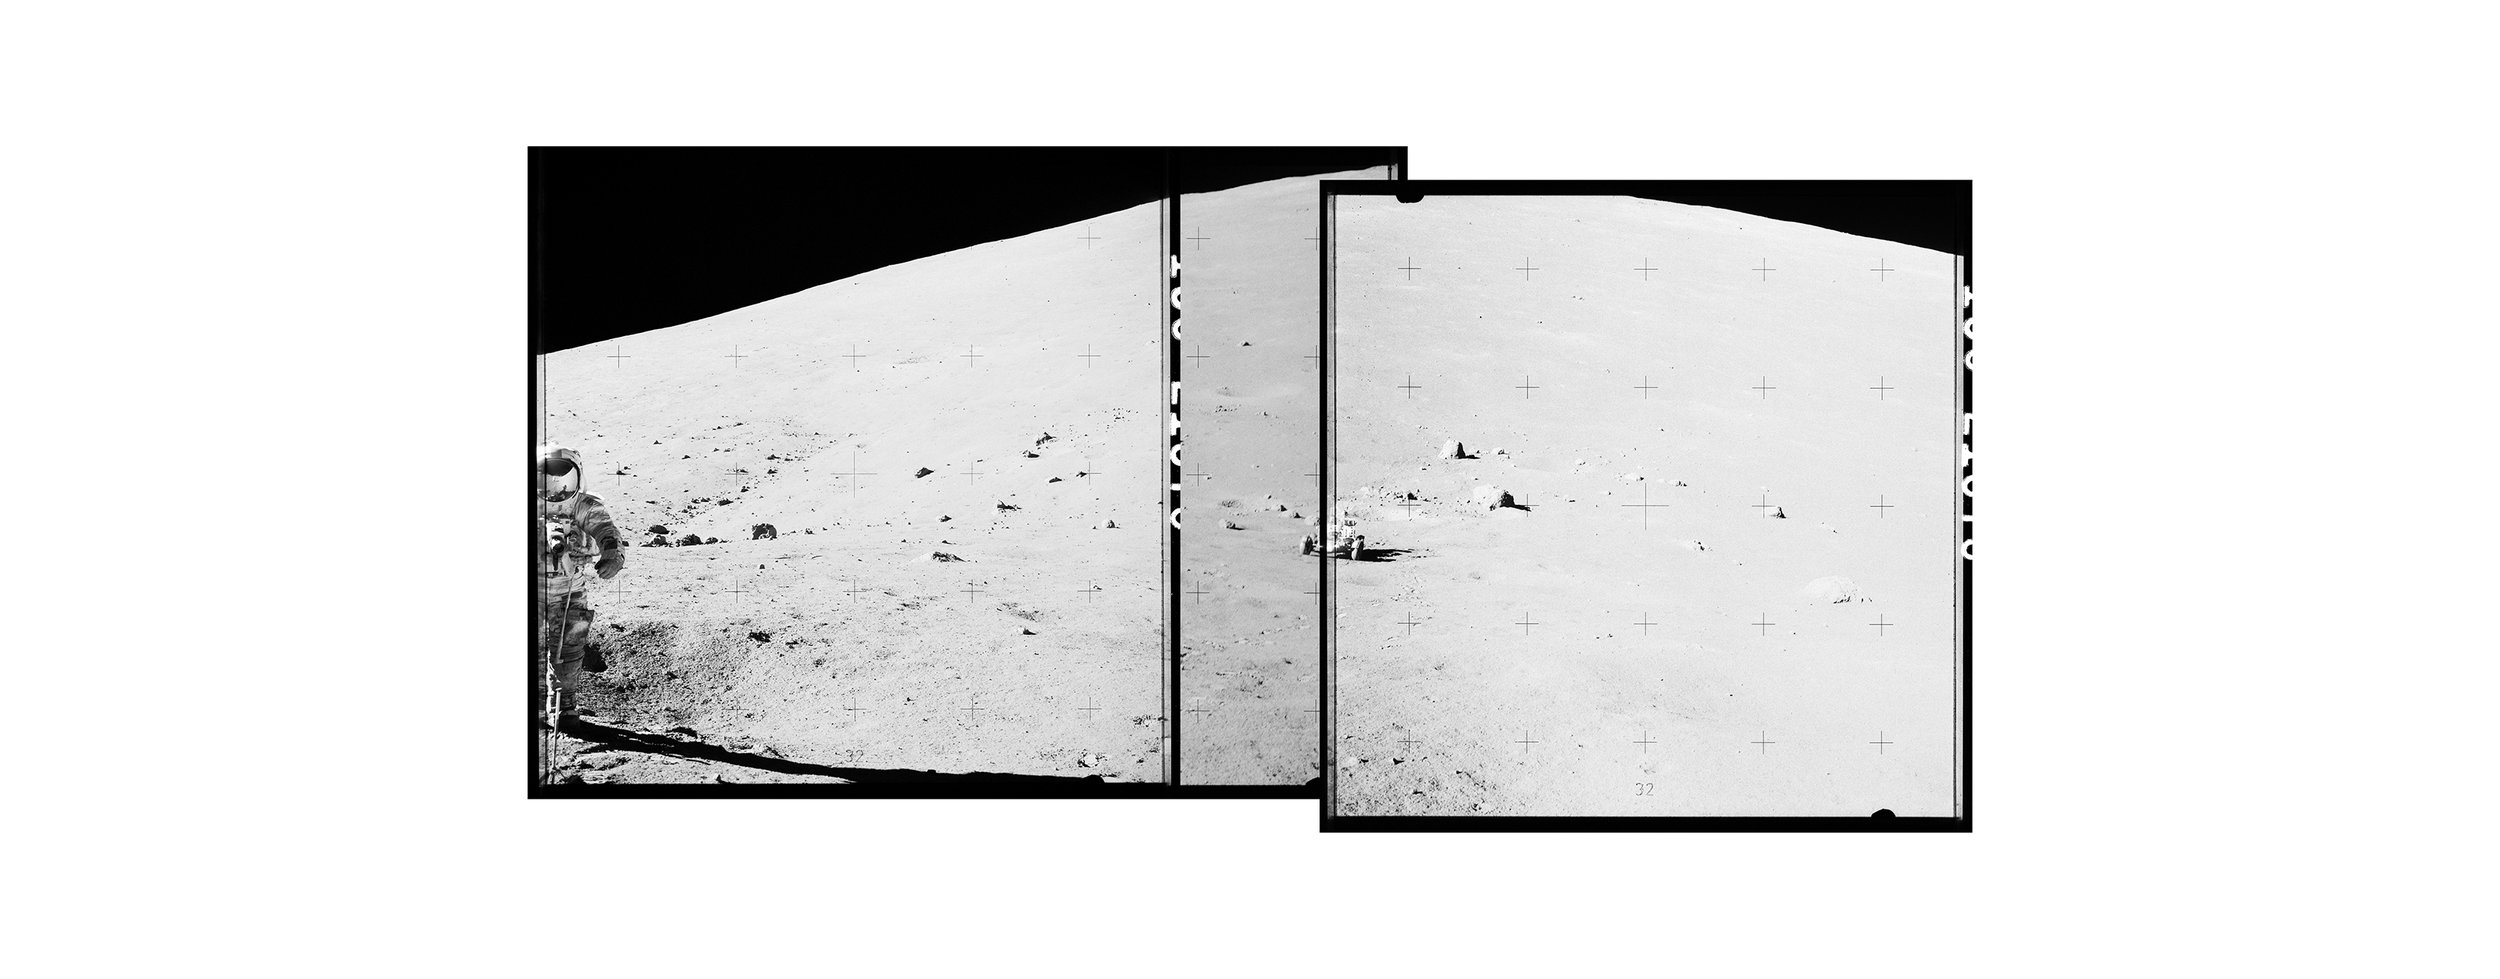  Taurus Mountains with an astronaut (110x60)Apollo 17 Magazine 138/L - NASA photographs1972 